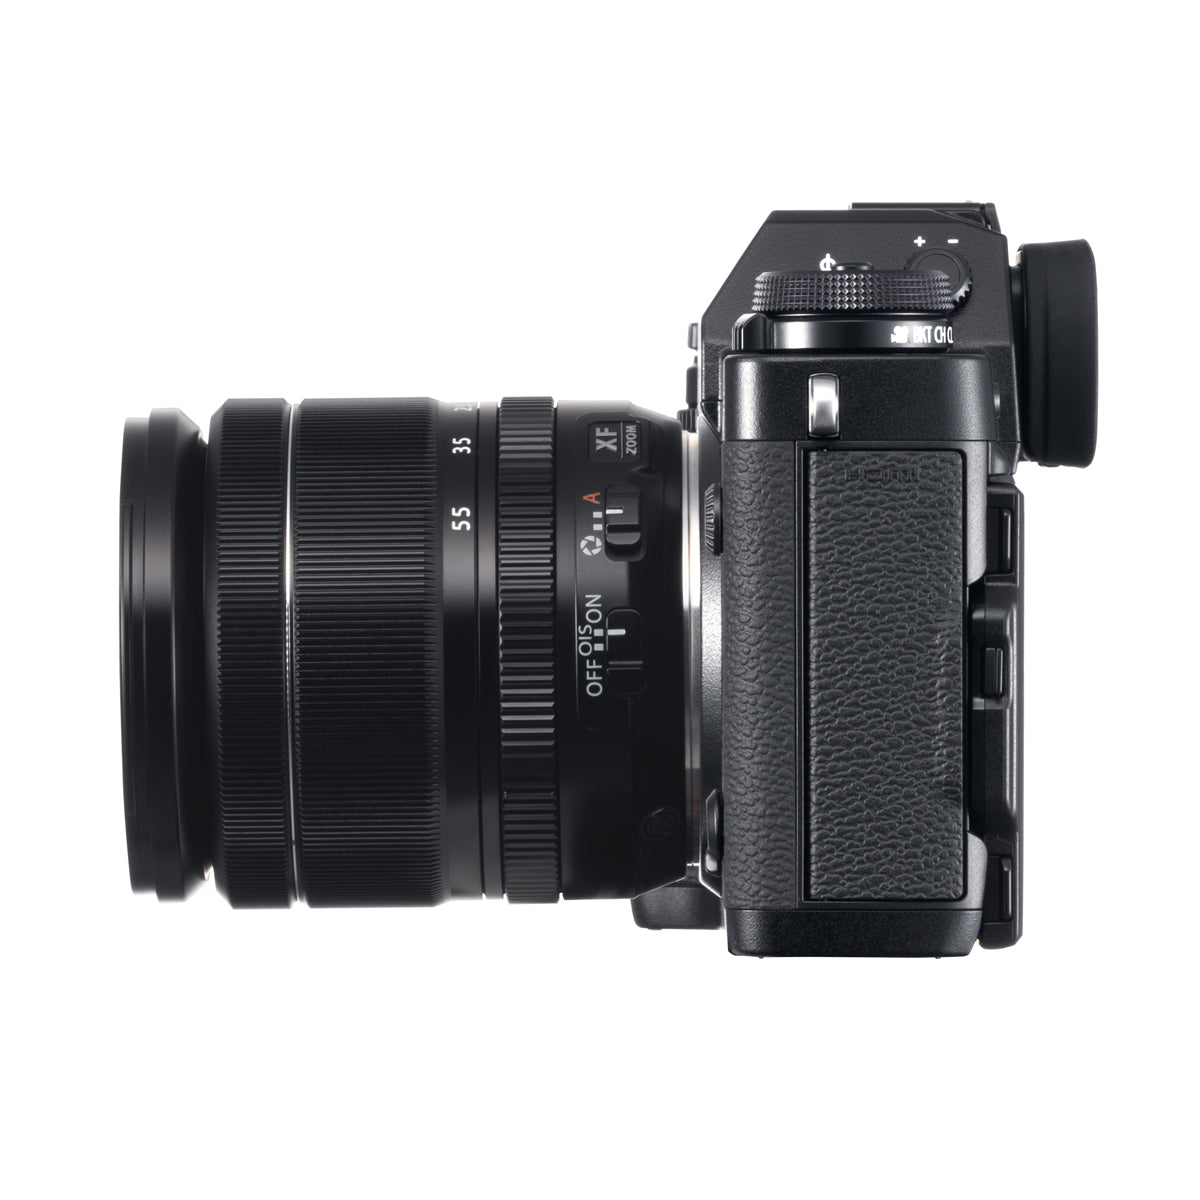 Fujifilm X-T3 Digital Camera w/18-55mm Lens Kit (Black)